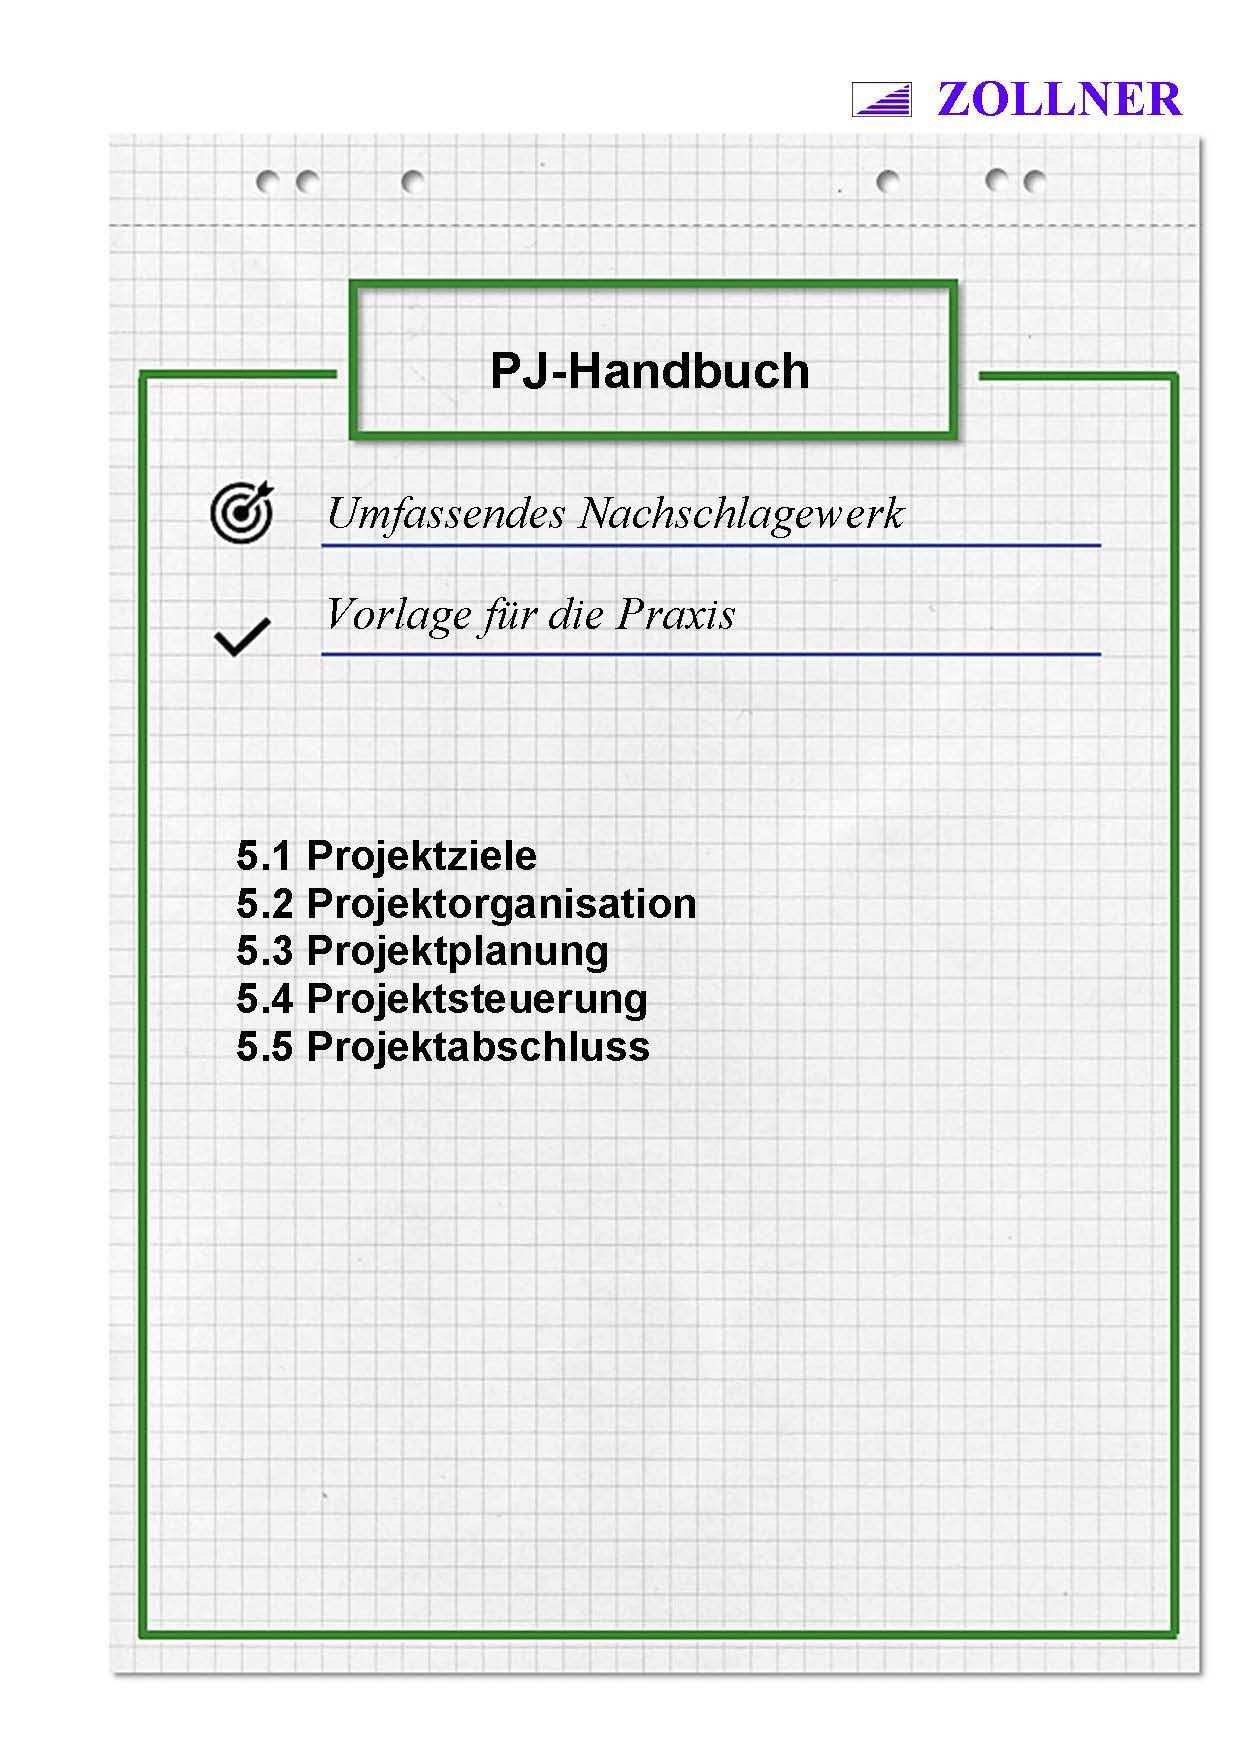 Industriemeister Mik Projektmanagement Handbuch Wolfgang Zollner Projektmanagement Projektsteuerung Excel Vorlage